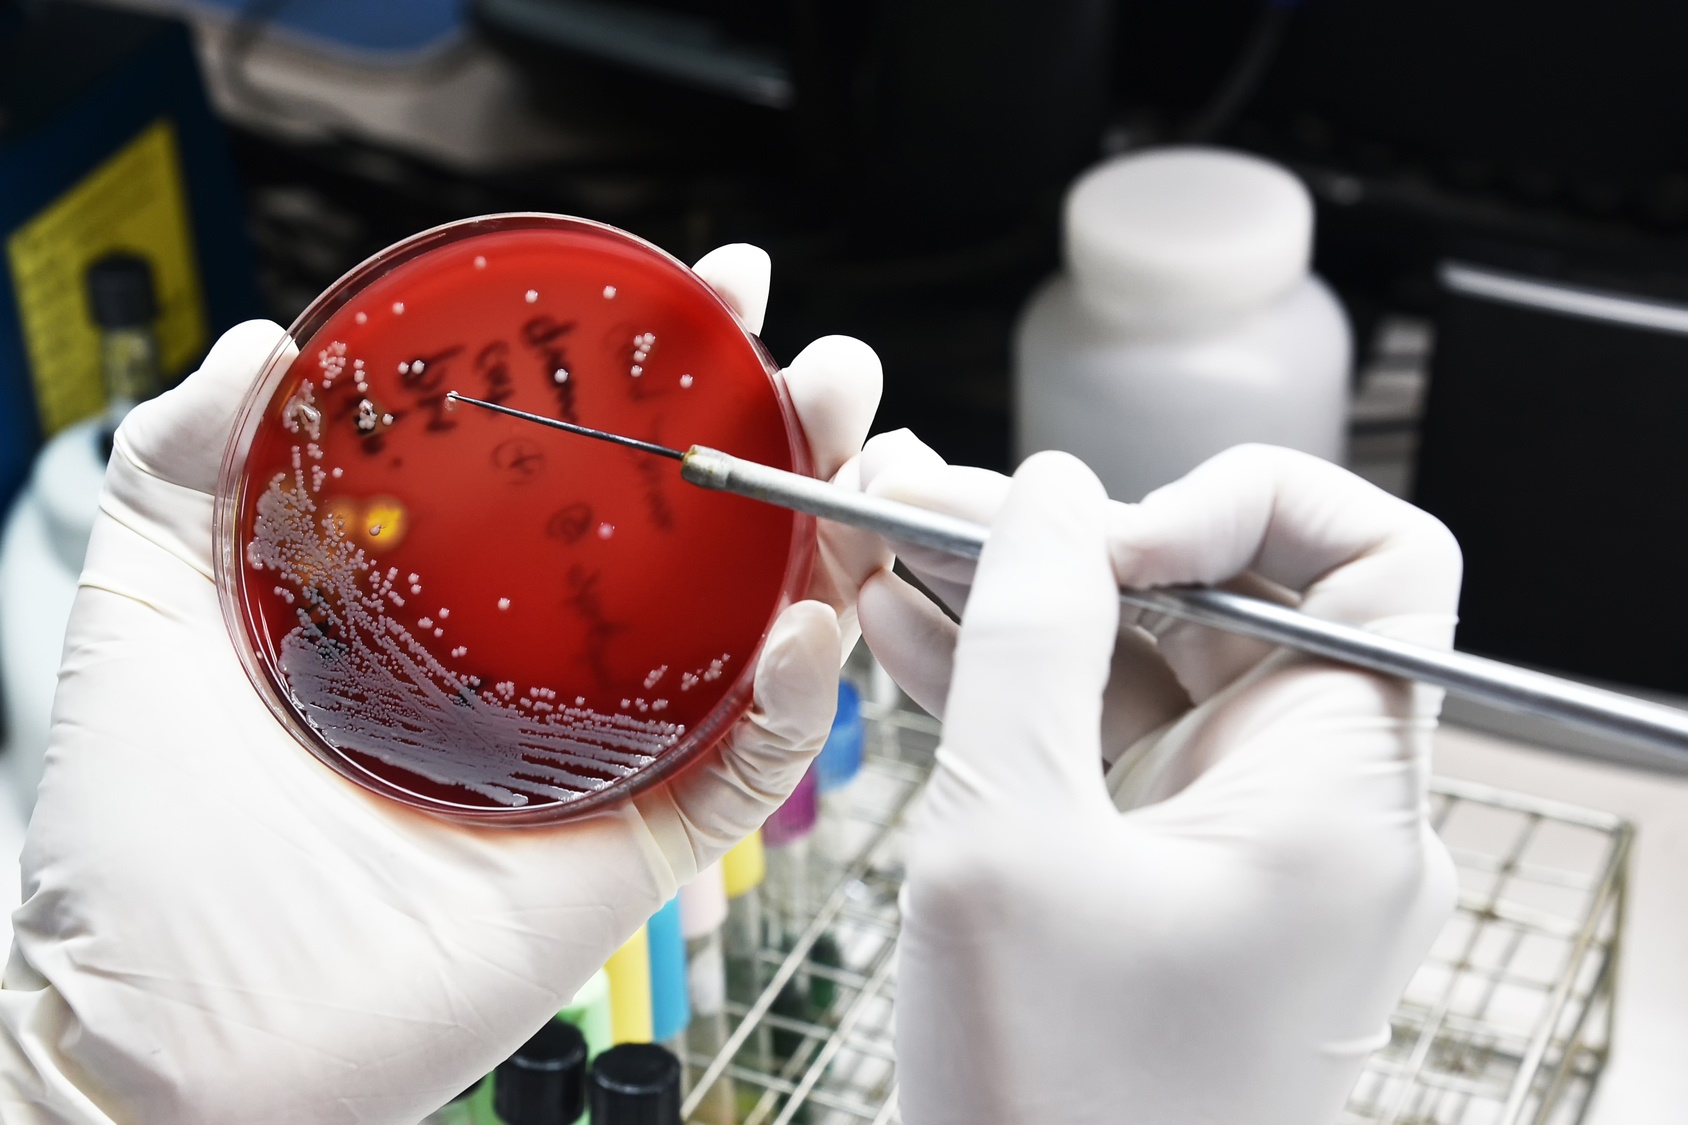 Les chercheurs ont trouvé une classe d’enzymes bactériennes qui représentent un espoir pour imaginer de nouveaux antibiotiques. © analysis121980, Fotolia